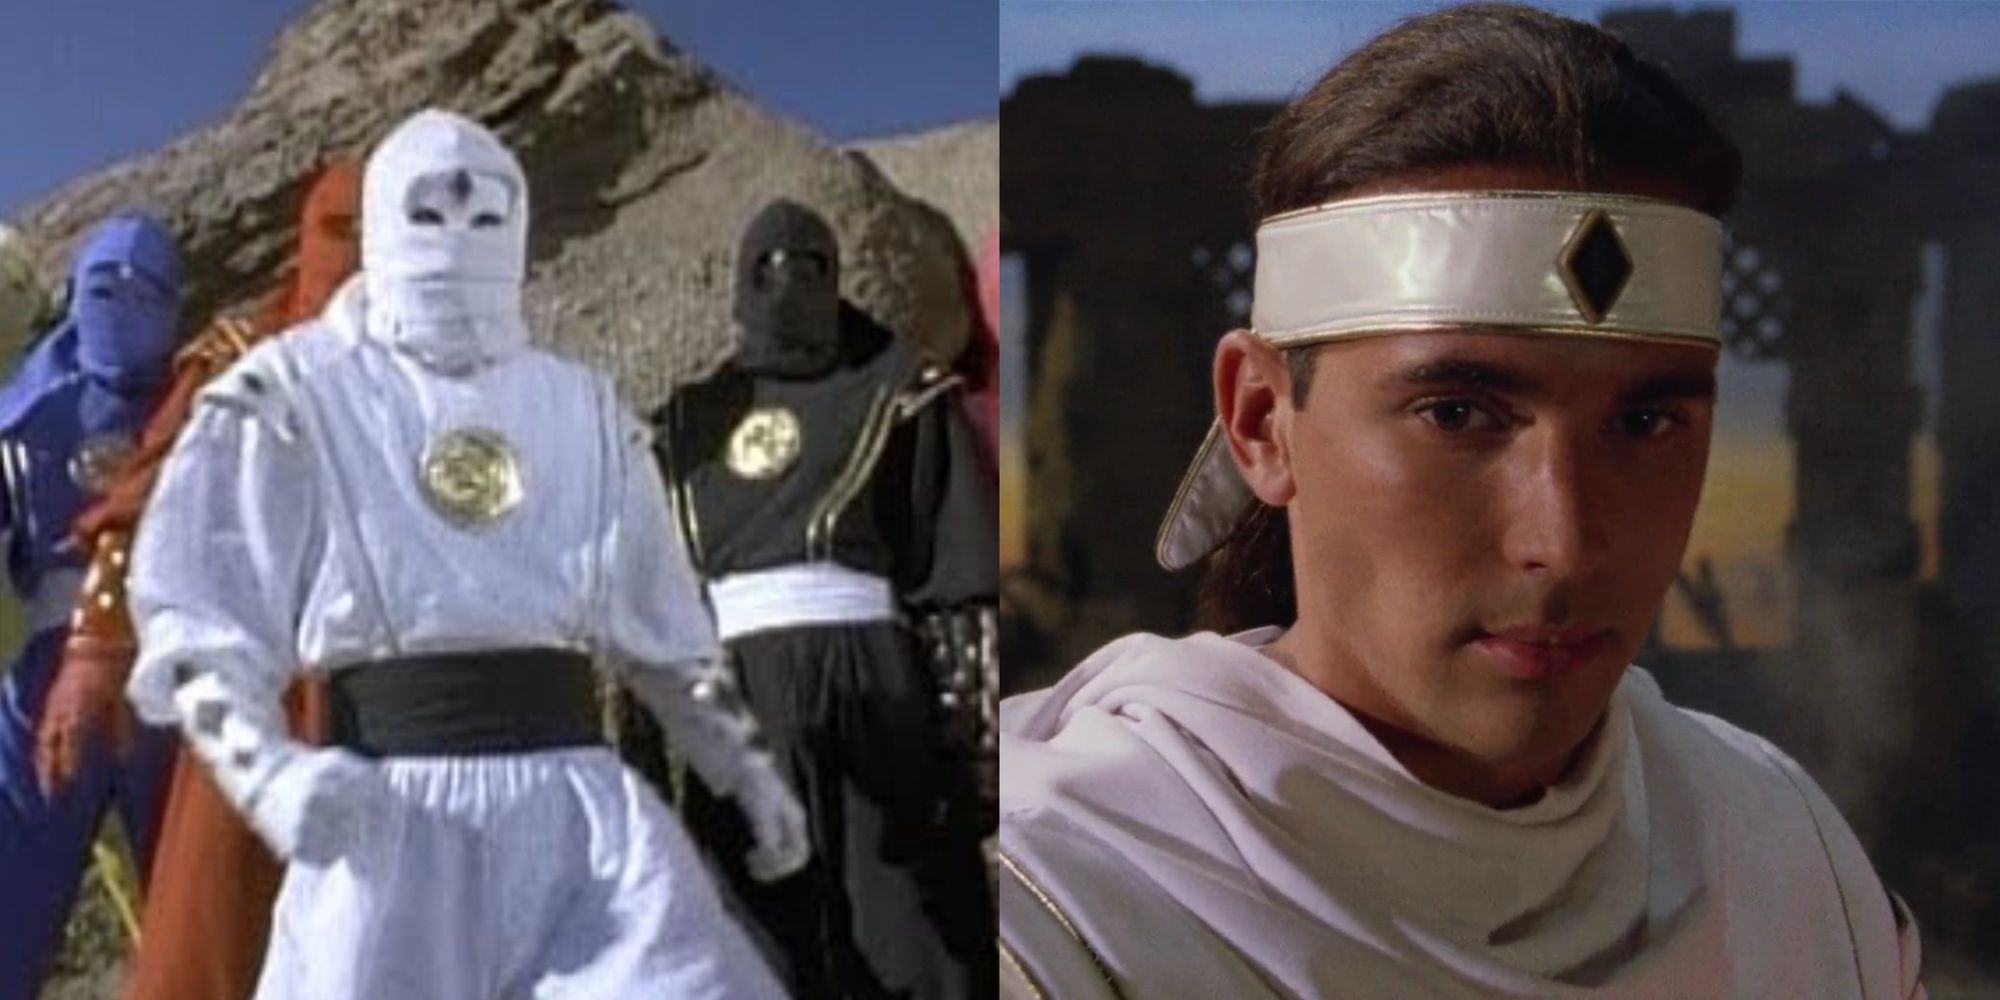 Tommy Oliver as the White Ninja Ranger